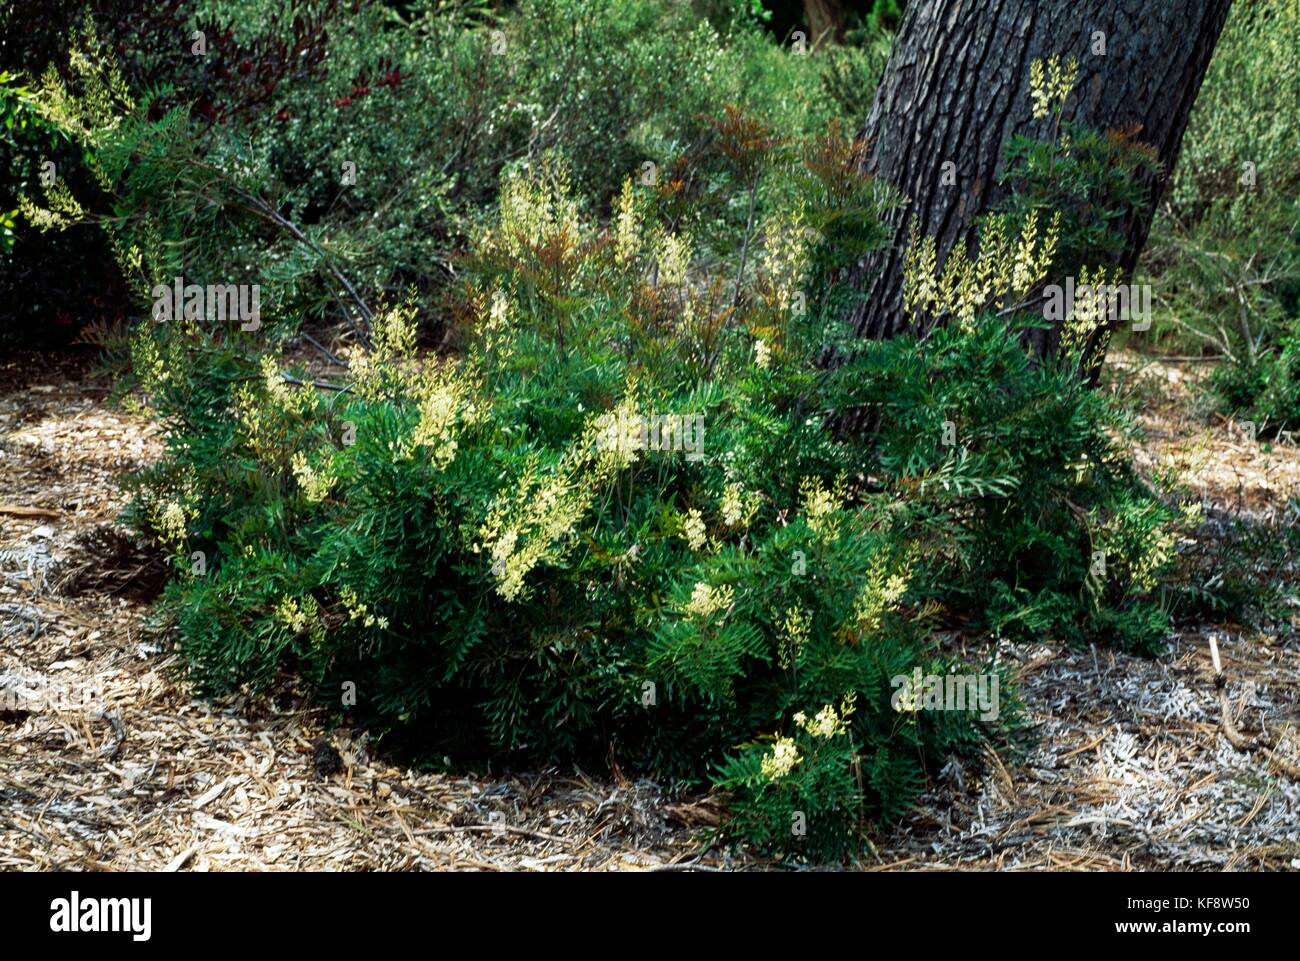 Crinkle bush or Parsley fern (Lomatia silaifolia), Proteaceae. Stock Photo